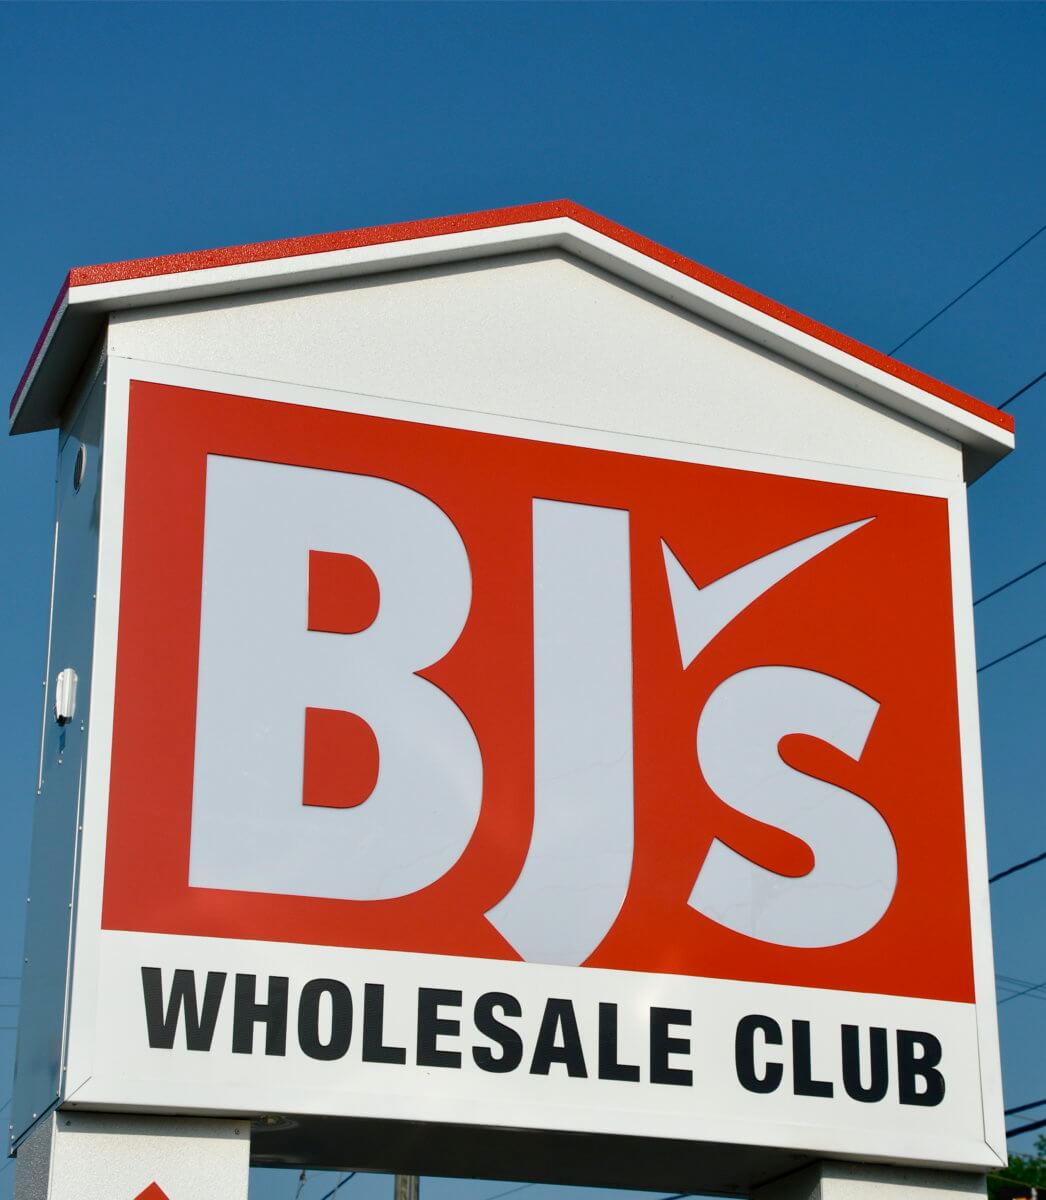 BJ’s Wholesale Club sign